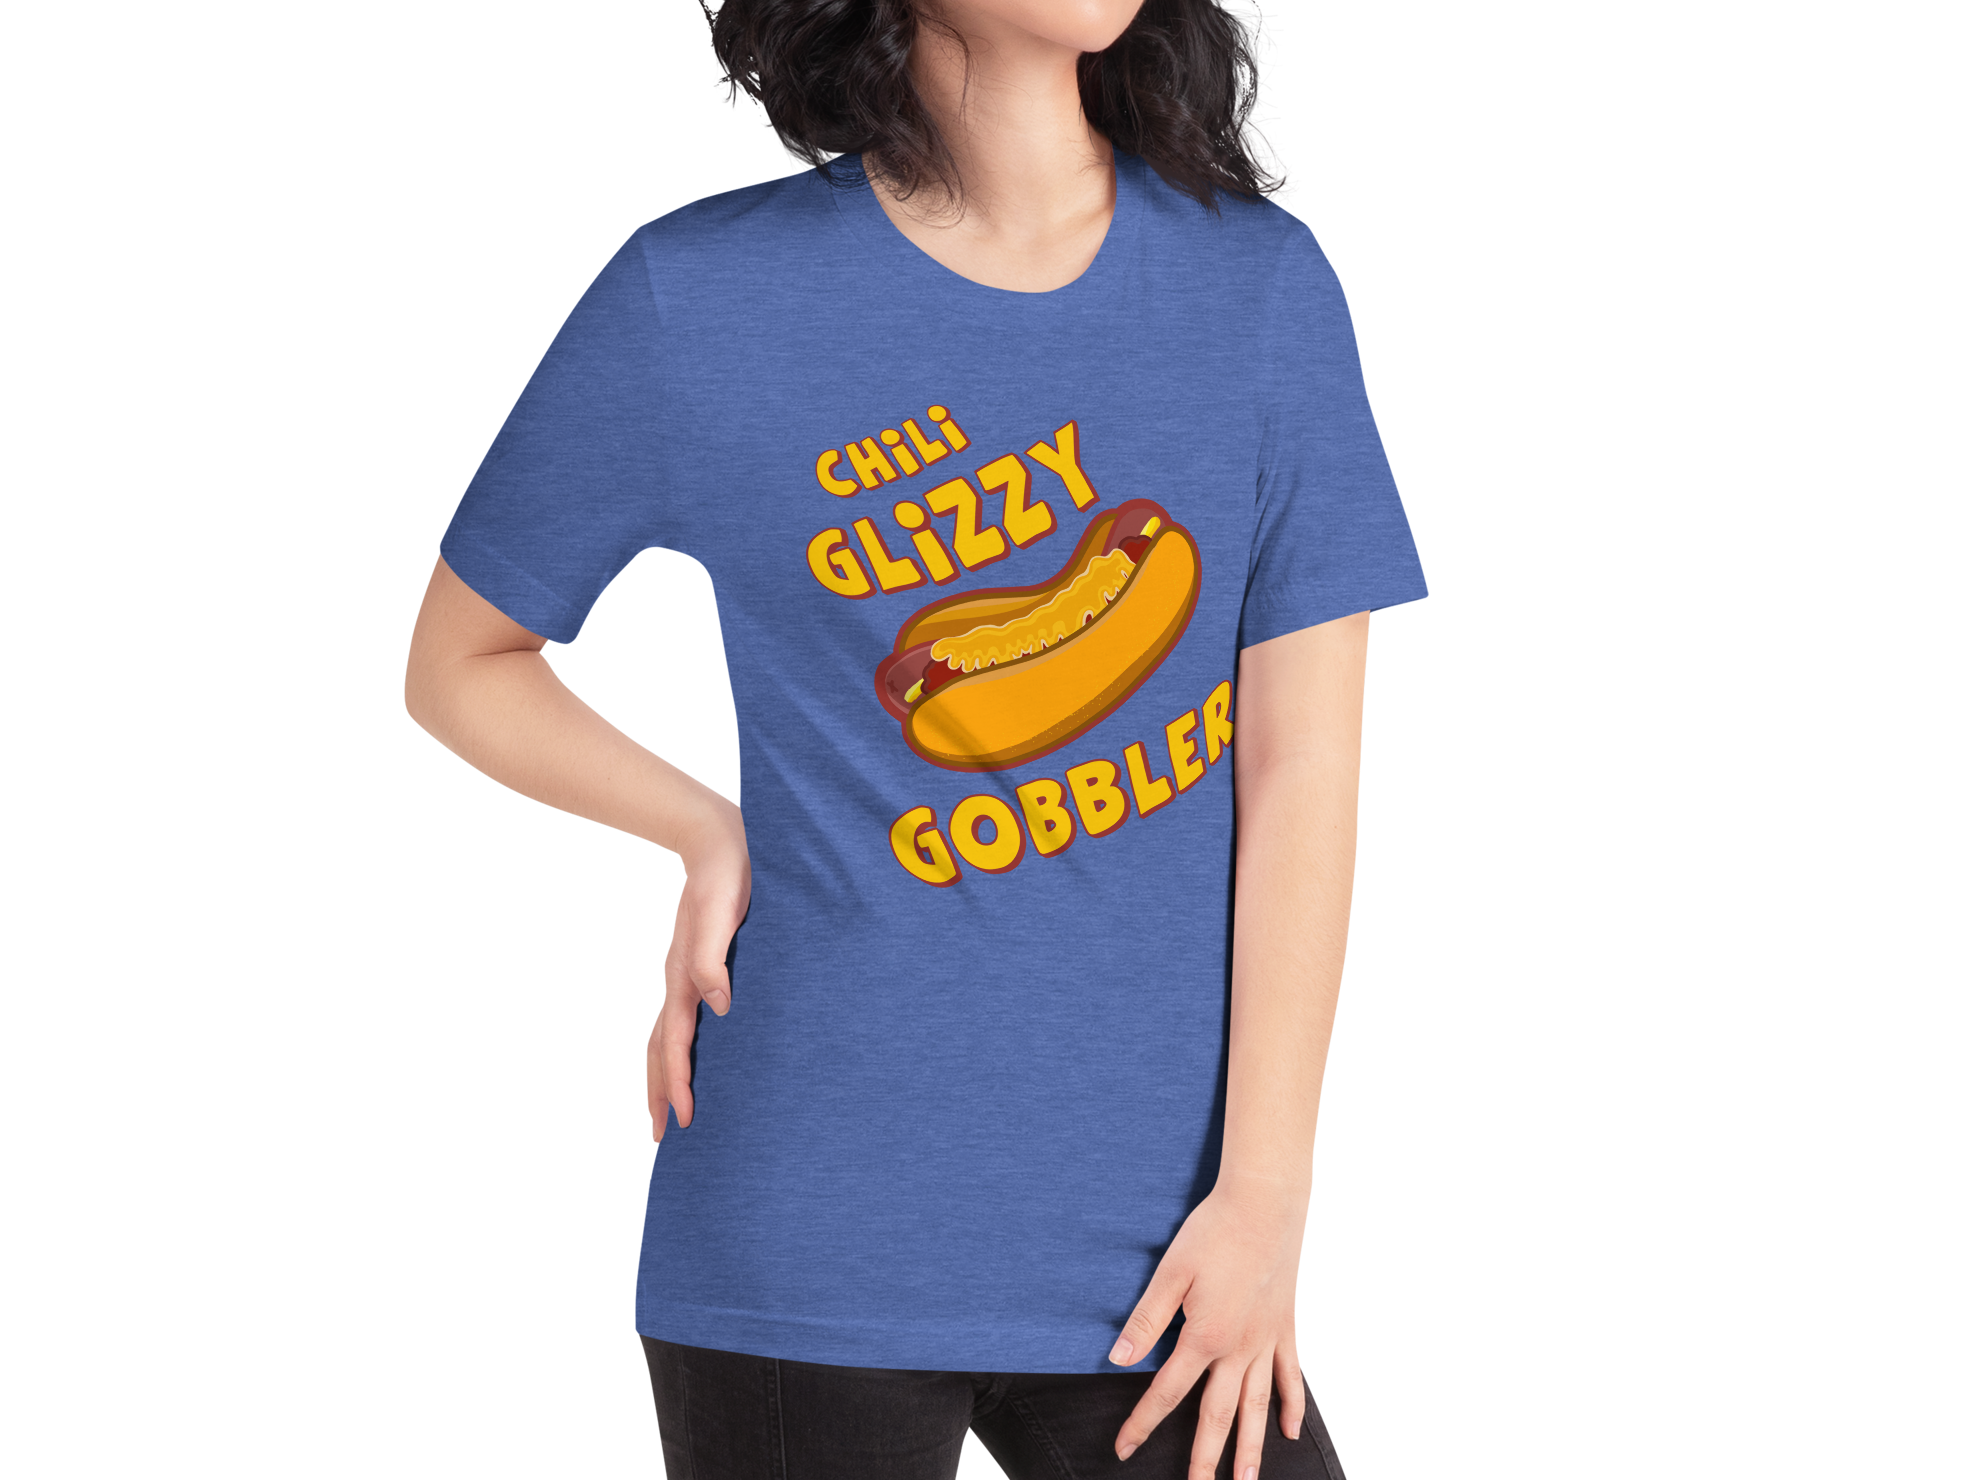 Chili Glizzy Gobbler